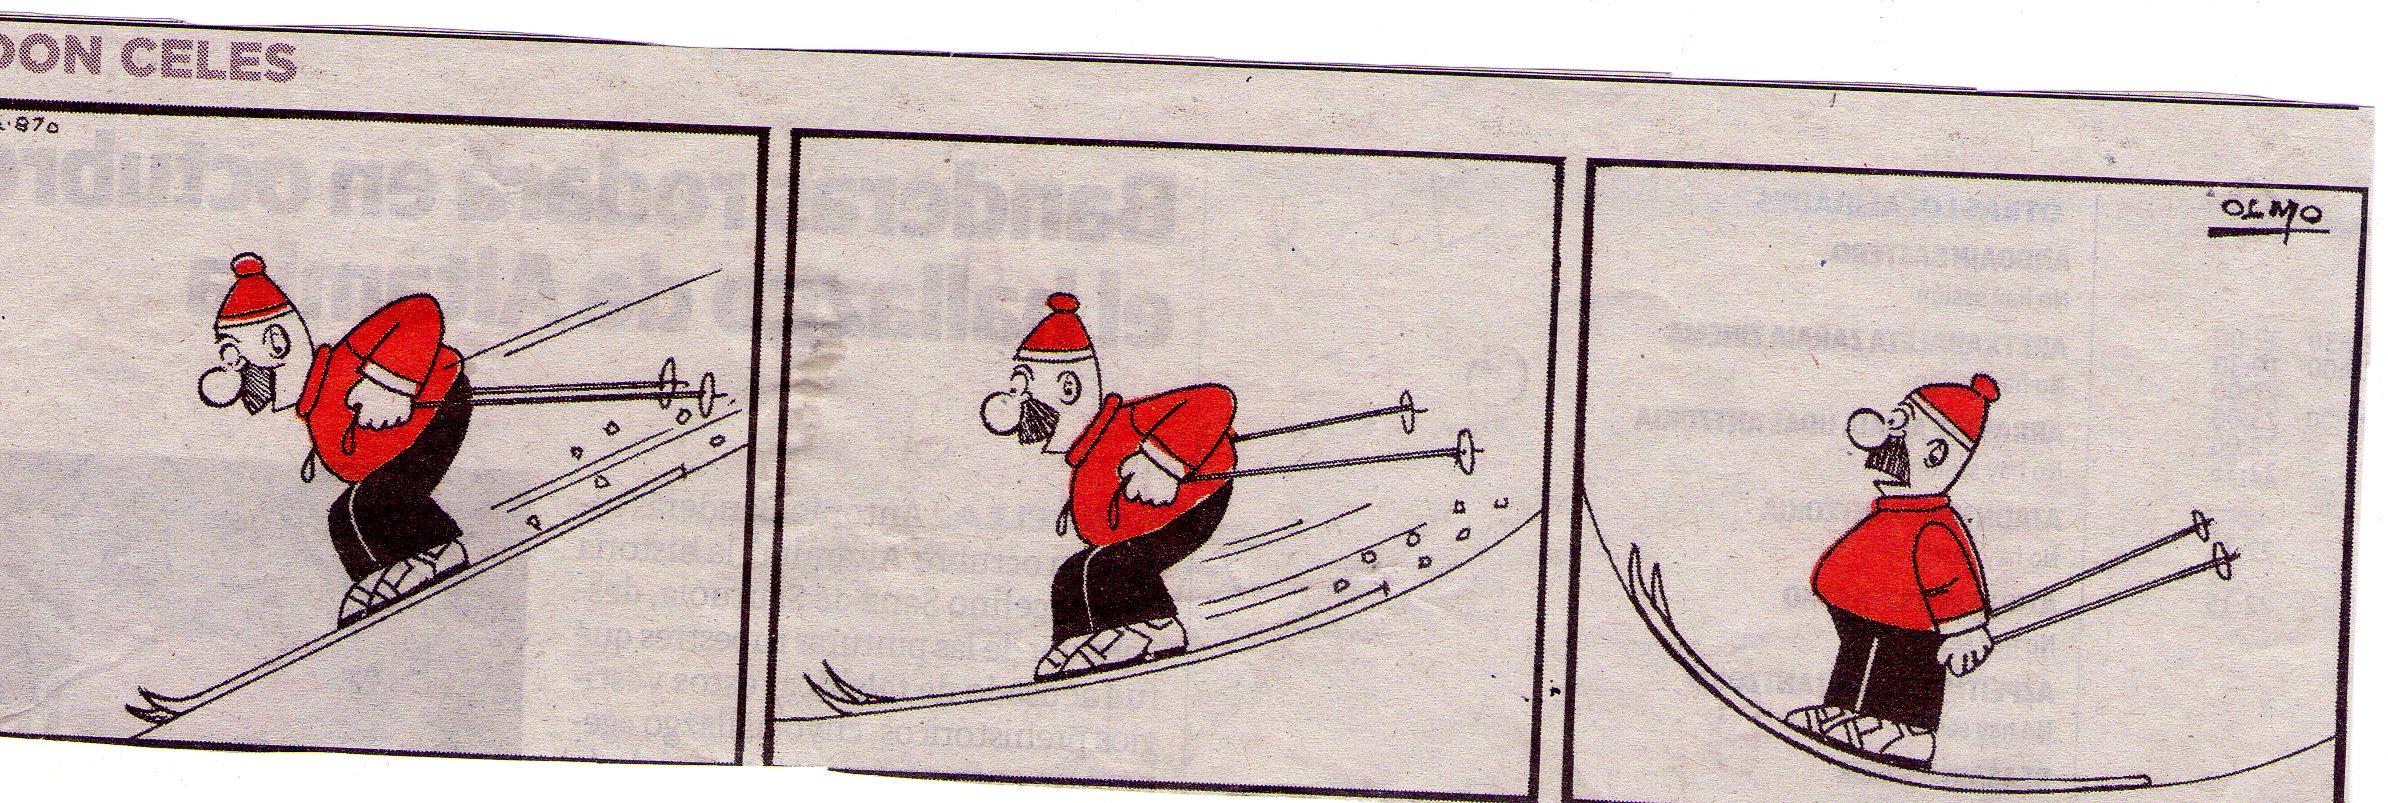 Don Celes esquiador